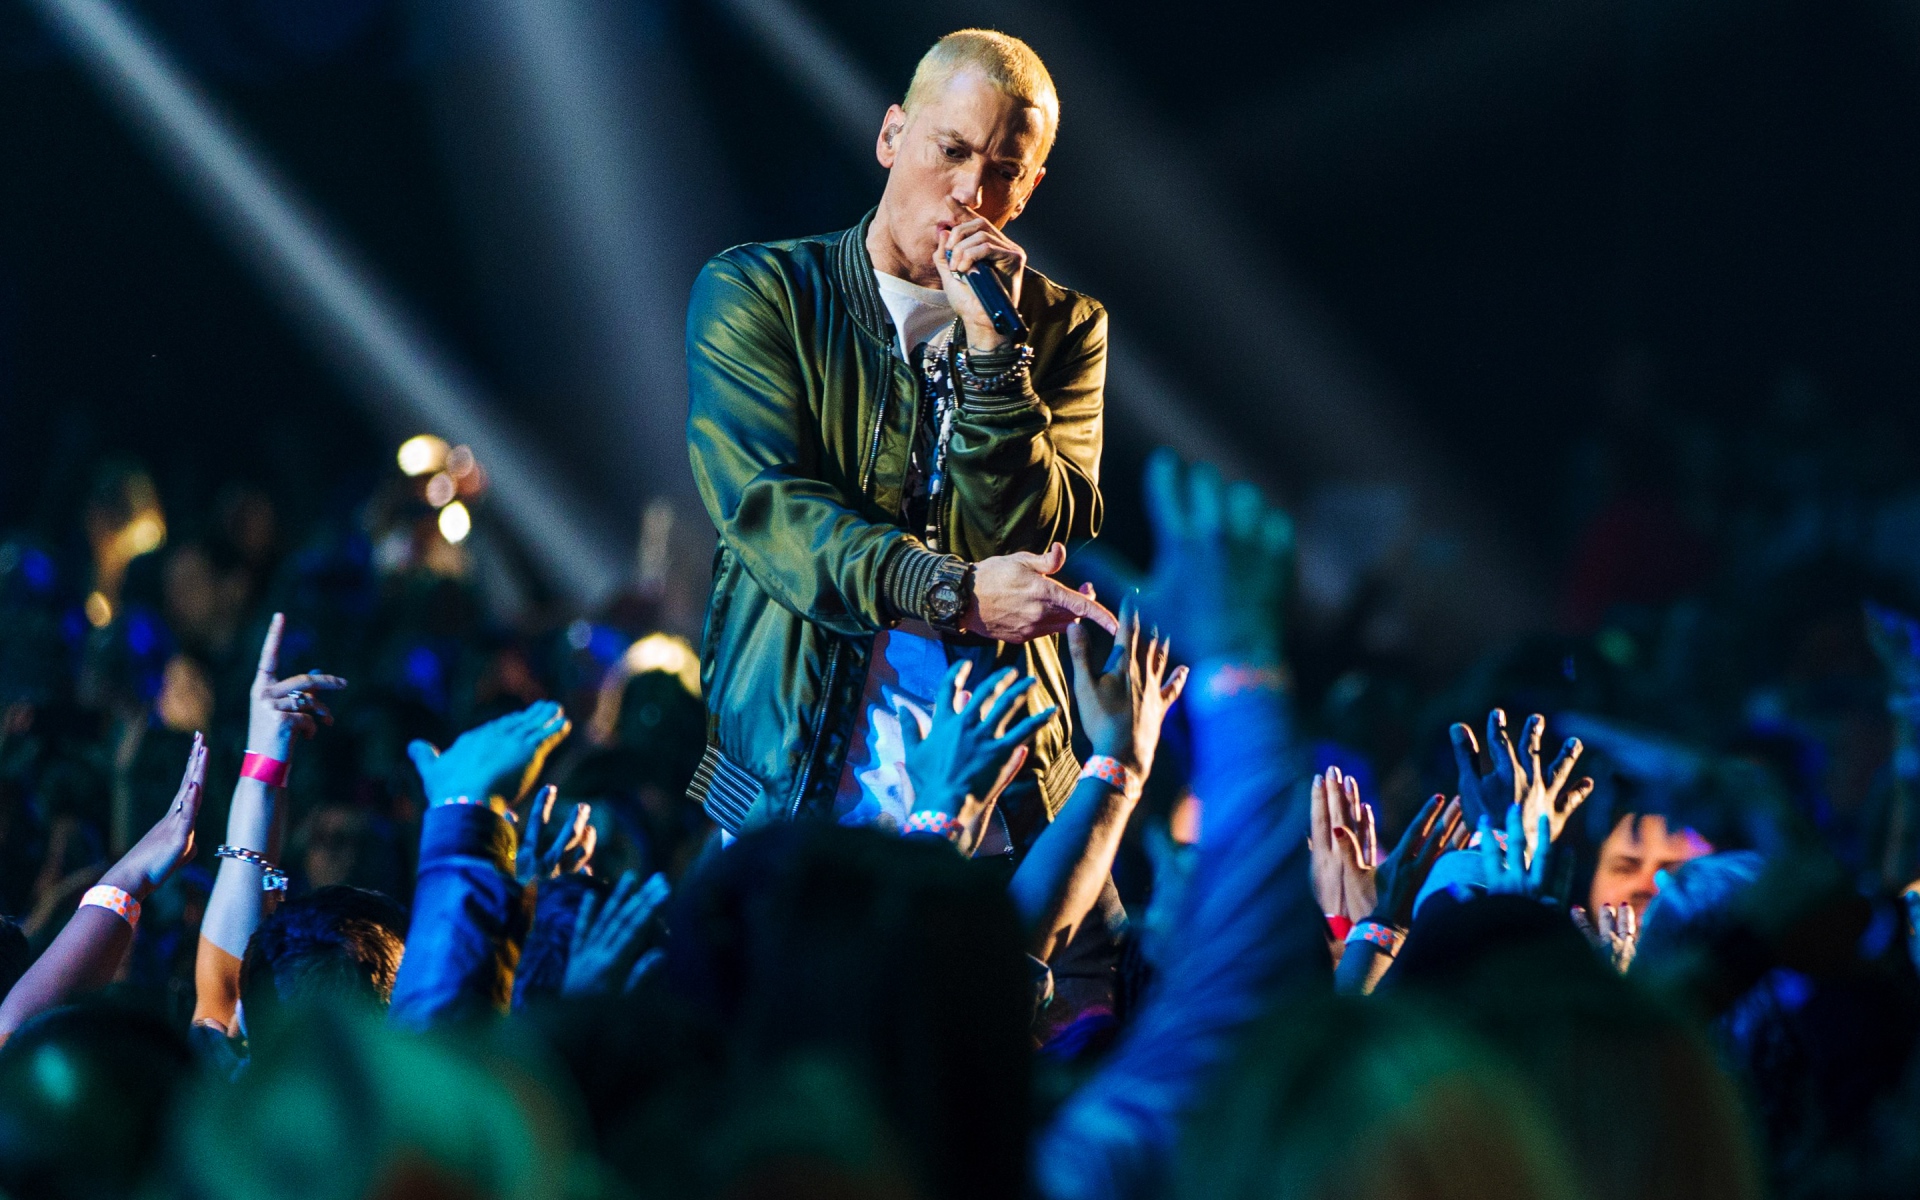 Картинки Eminem, исполнение, аудитория, руки фото и обои на рабочий стол